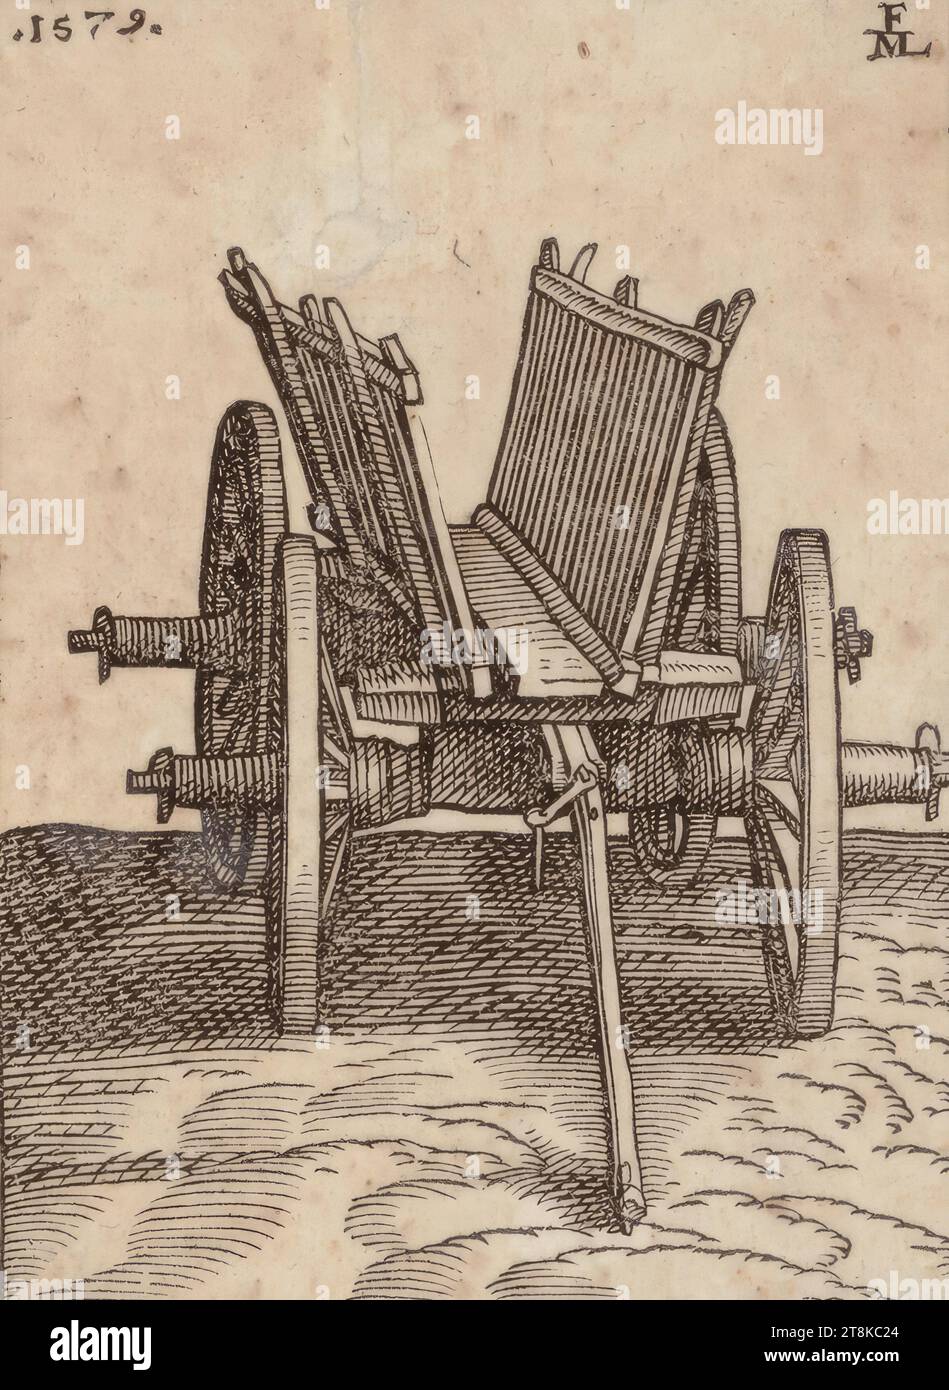 Un chariot à quatre roues, des figures bien travaillées et taillées Anno 1619, Melchior Lorch, Flensburg vers 1527 - après 1583 Copenhague, Rome ou Hambourg, 1579, estampe, gravure sur bois, feuille : 14,8 x 10,5 cm Banque D'Images